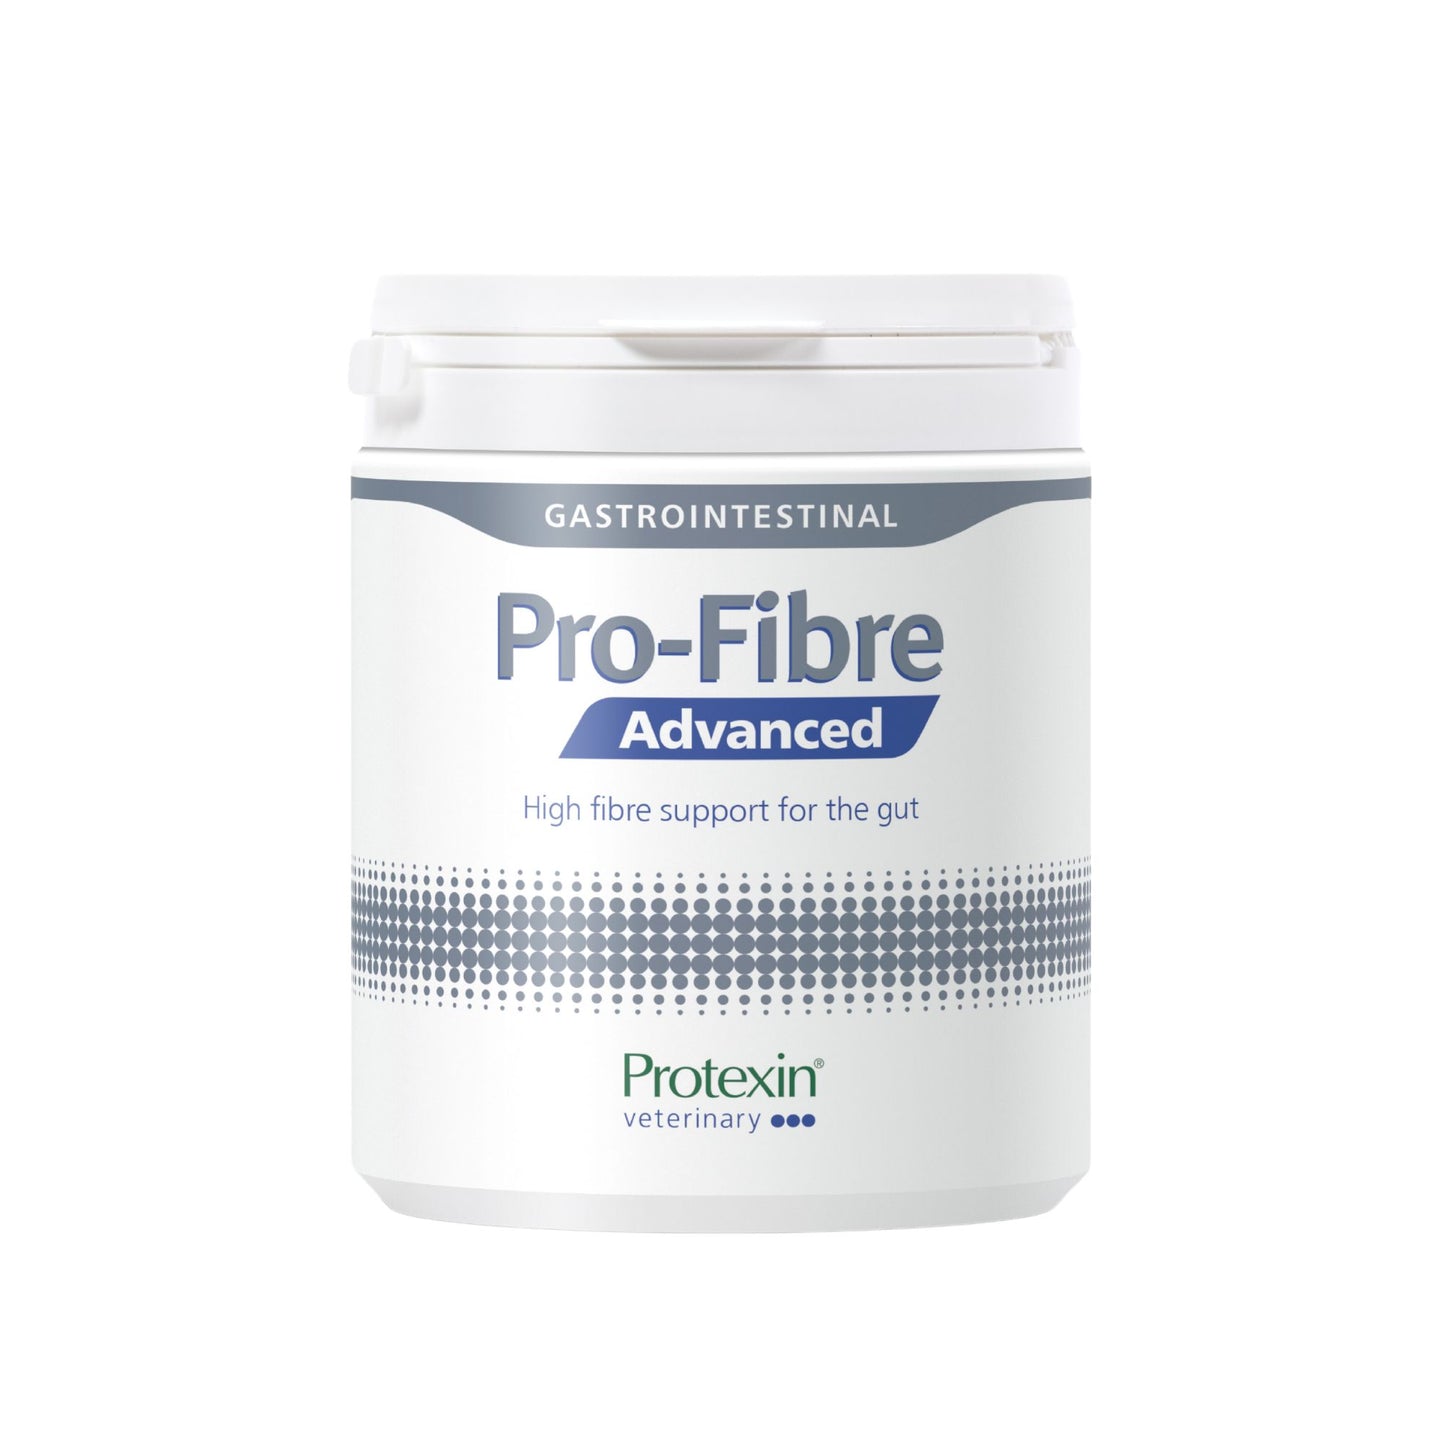 Pro-Fibre Advanced - papildas tinkamai virškinimo ir analinių liaukų sveikatai palaikyti